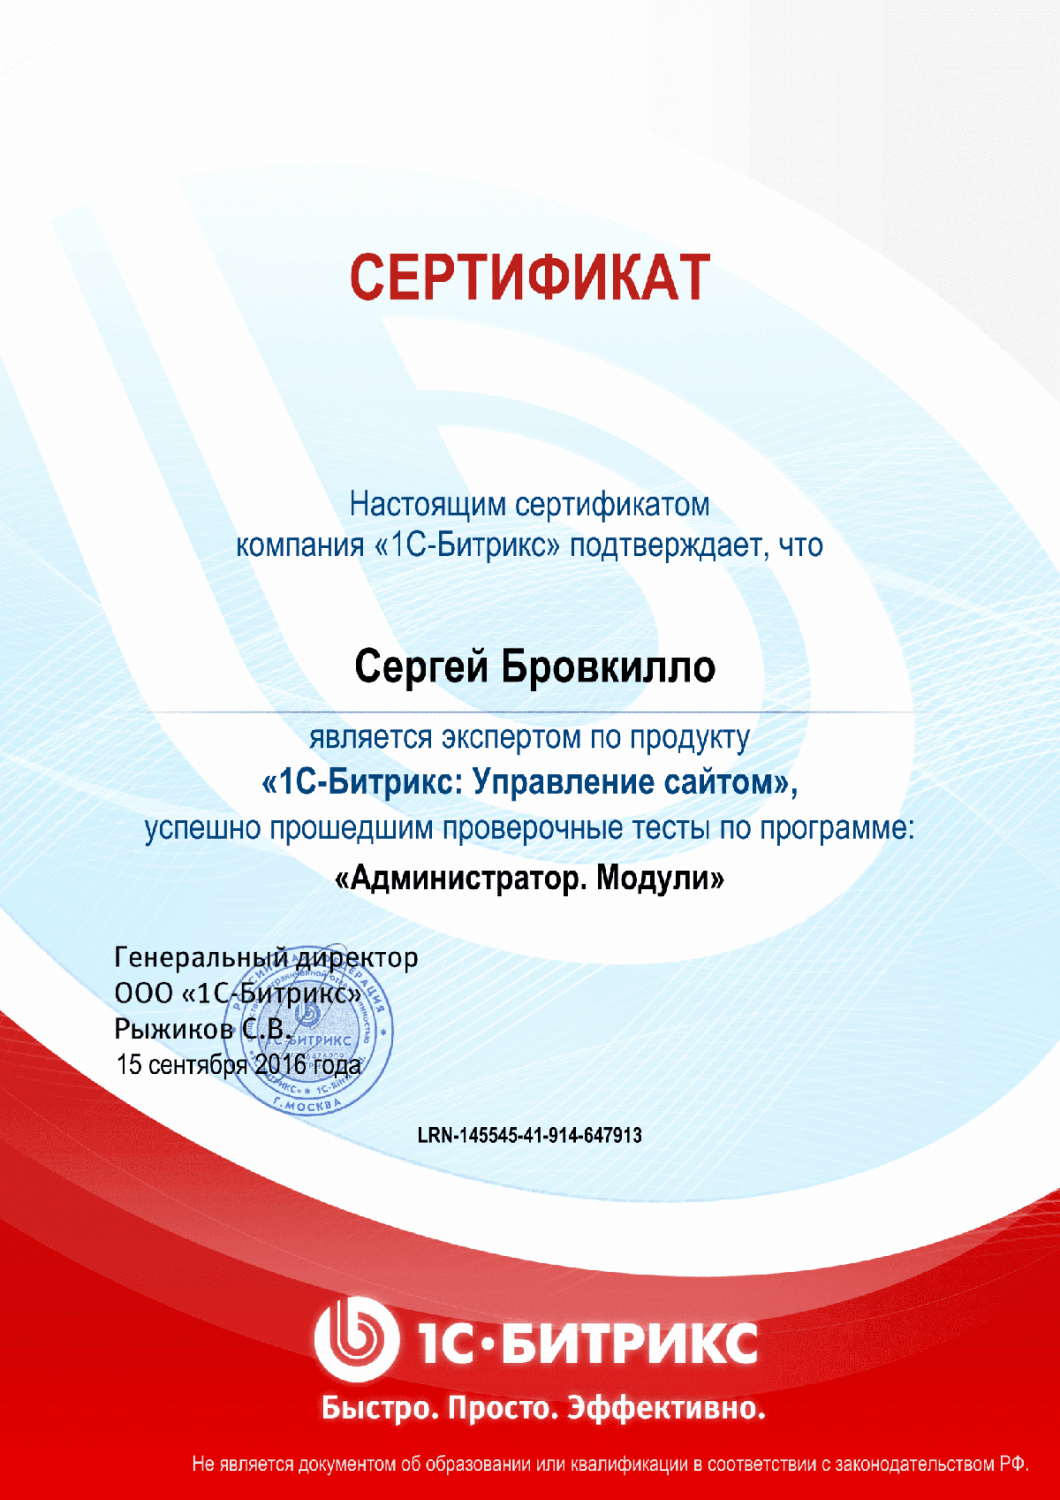 Сертификат эксперта по программе "Администратор. Модули" в Брянска